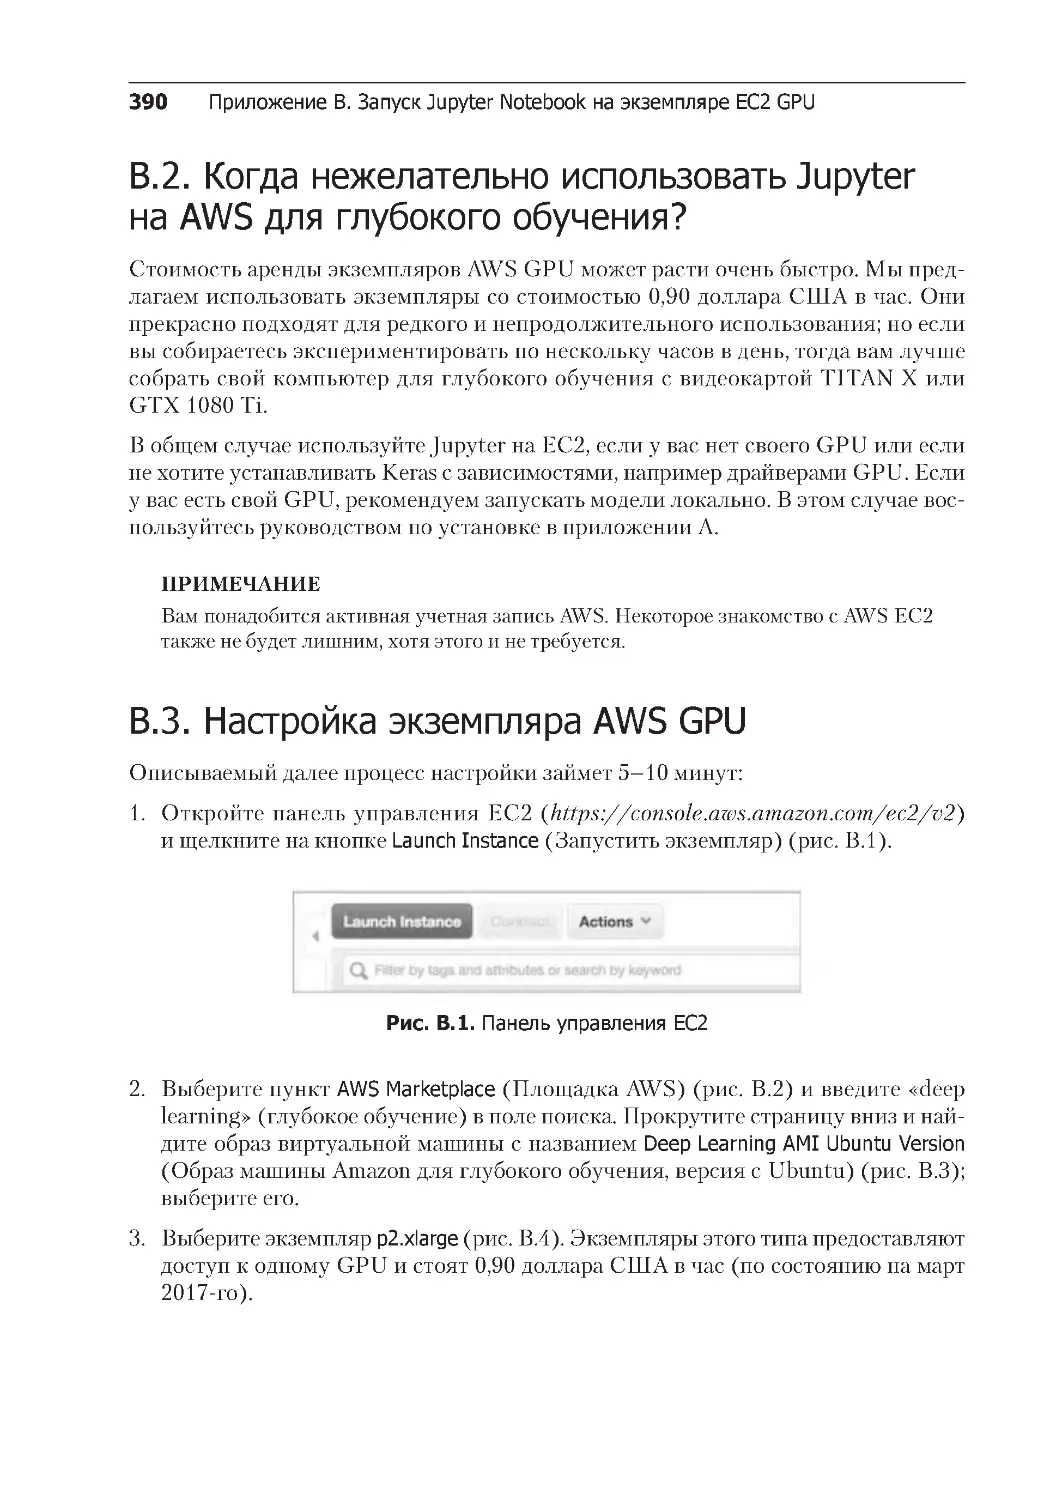 ﻿B.2. Когда нежелательно использовать Jupyter на AWS для глубокого обучения
﻿B.3. Настройка экземпляра AWS GP